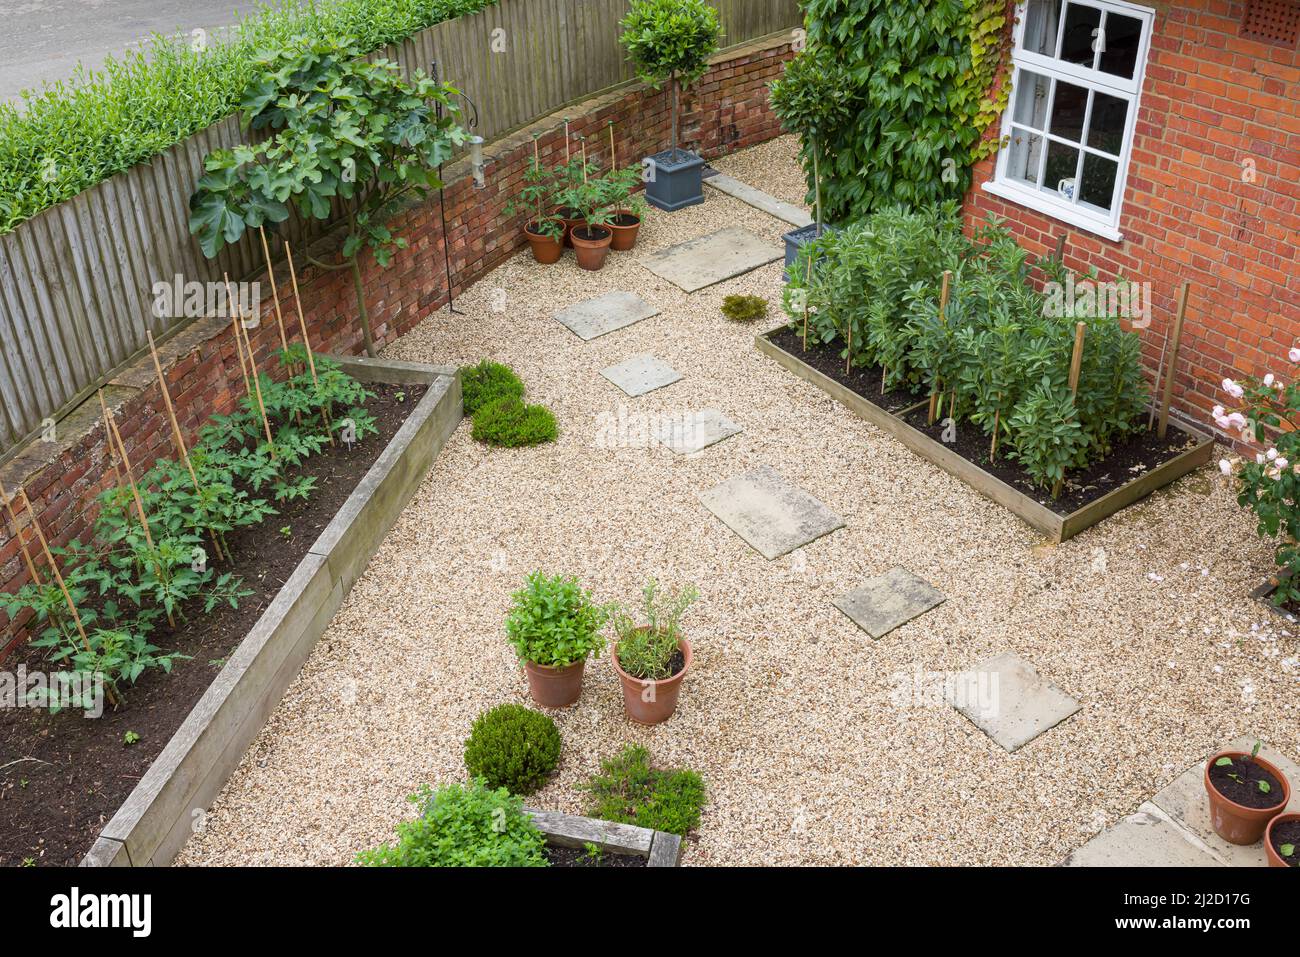 Jardin paysager Royaume-Uni. Aménagement paysager difficile avec gravier, pierres de pierre de York et lits surélevés en chêne Banque D'Images